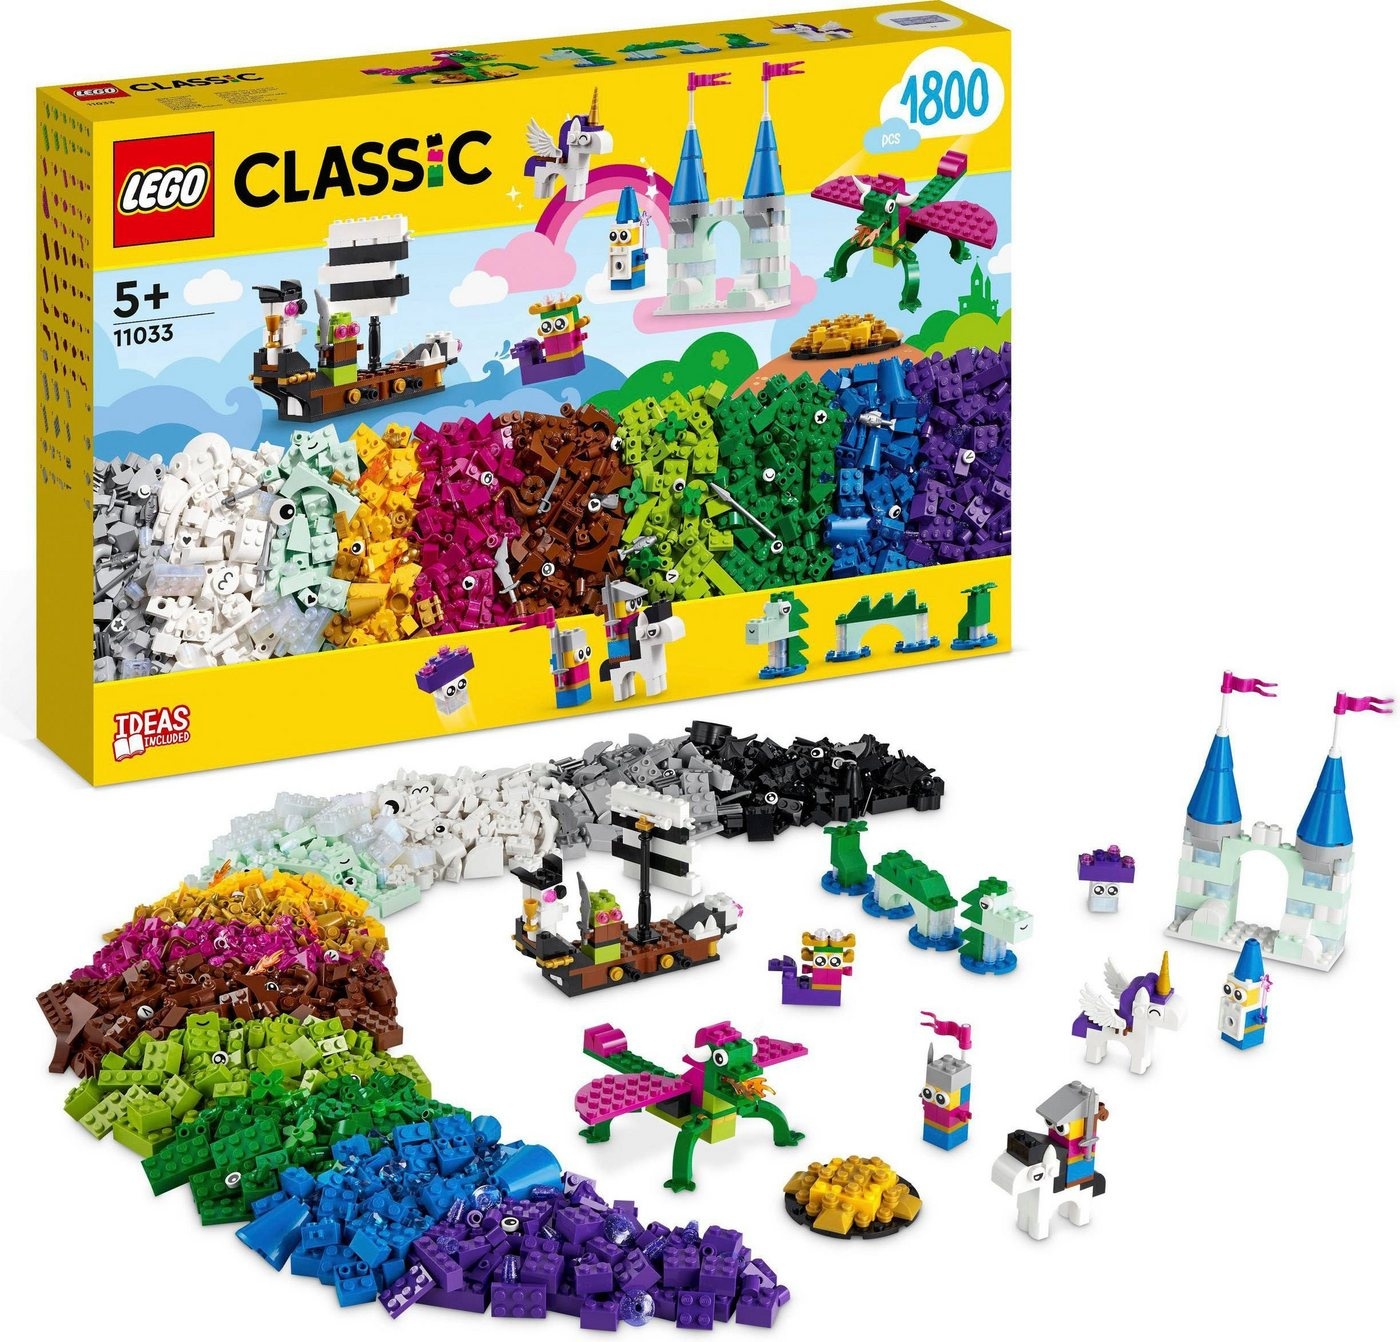 LEGO® Konstruktionsspielsteine Fantasie-Universum Kreativ-Bauset (11033), LEGO® Classic, (1800 St), Made in Europe bunt 